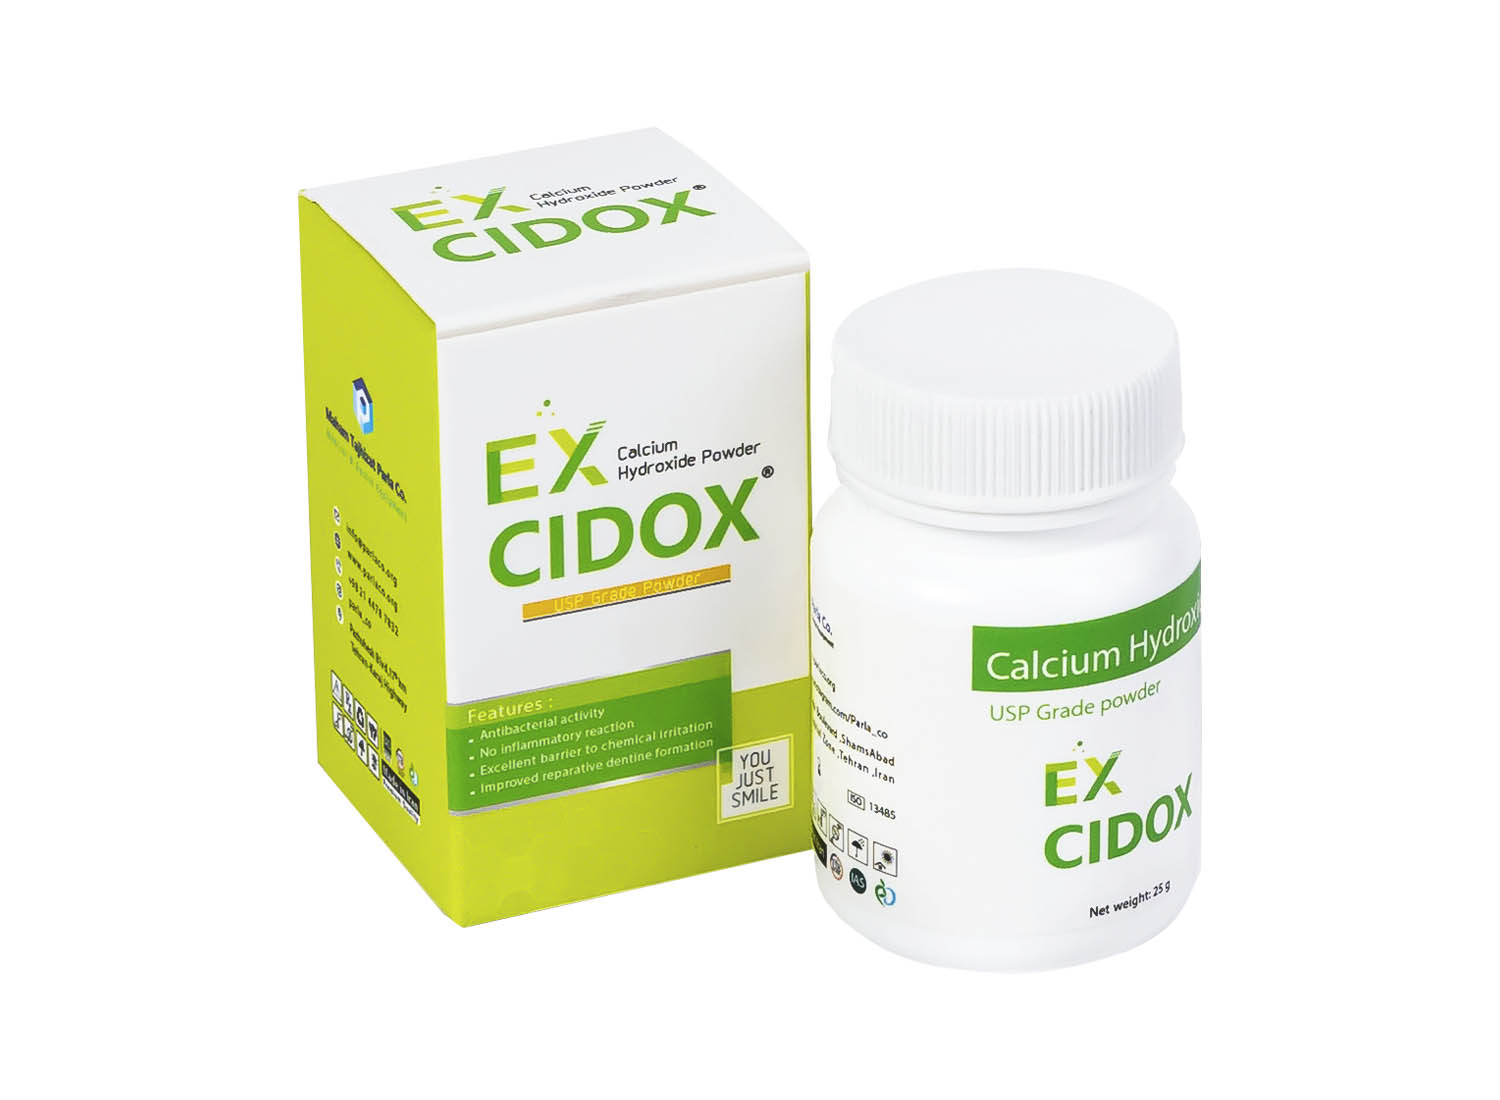 پودر کلسیم هیدروکساید EX CIDOX قوطی 25 گرمی برند پارلا